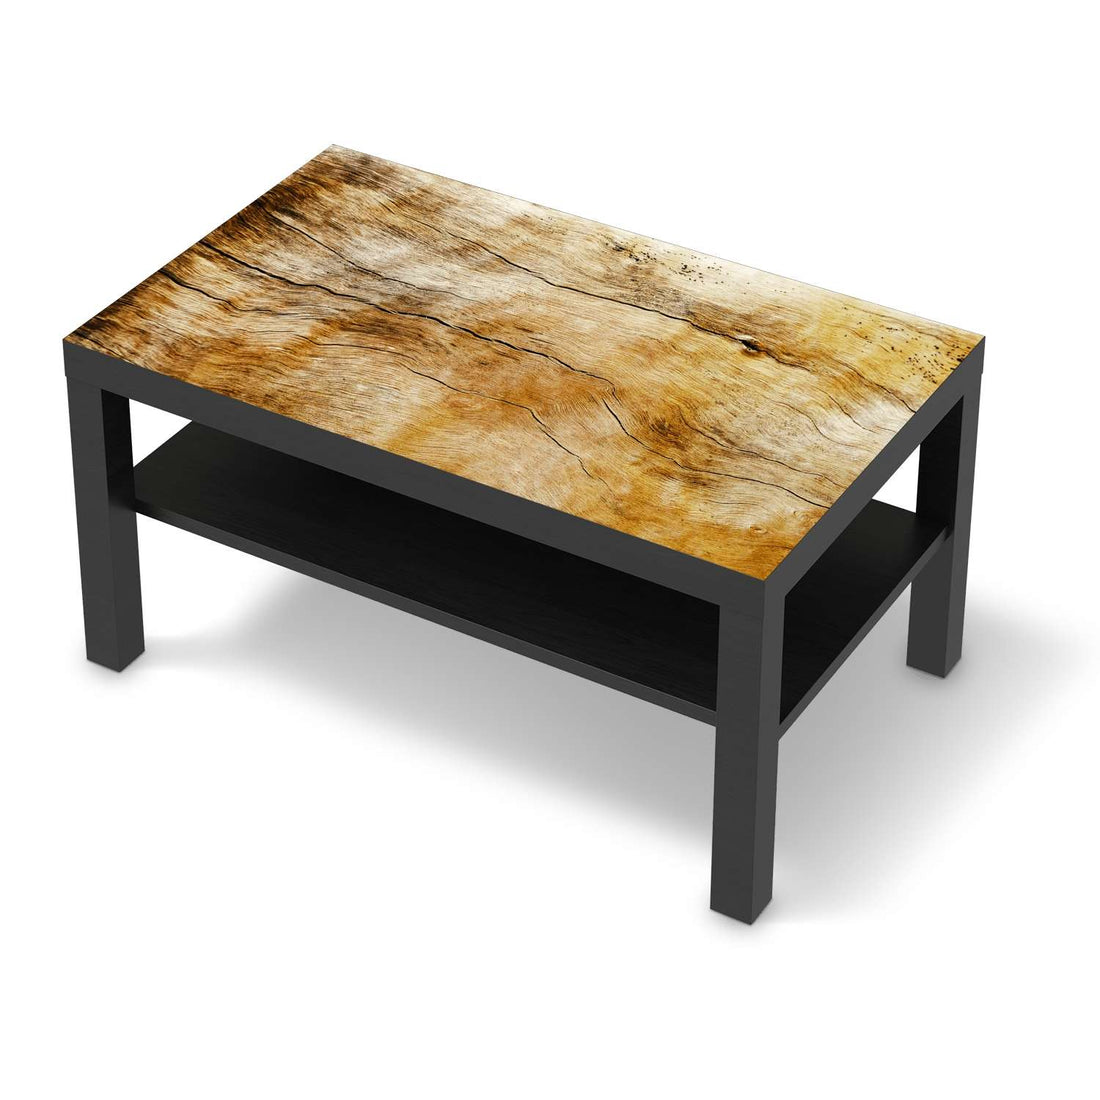 Möbelfolie Unterholz - IKEA Lack Tisch 90x55 cm - schwarz